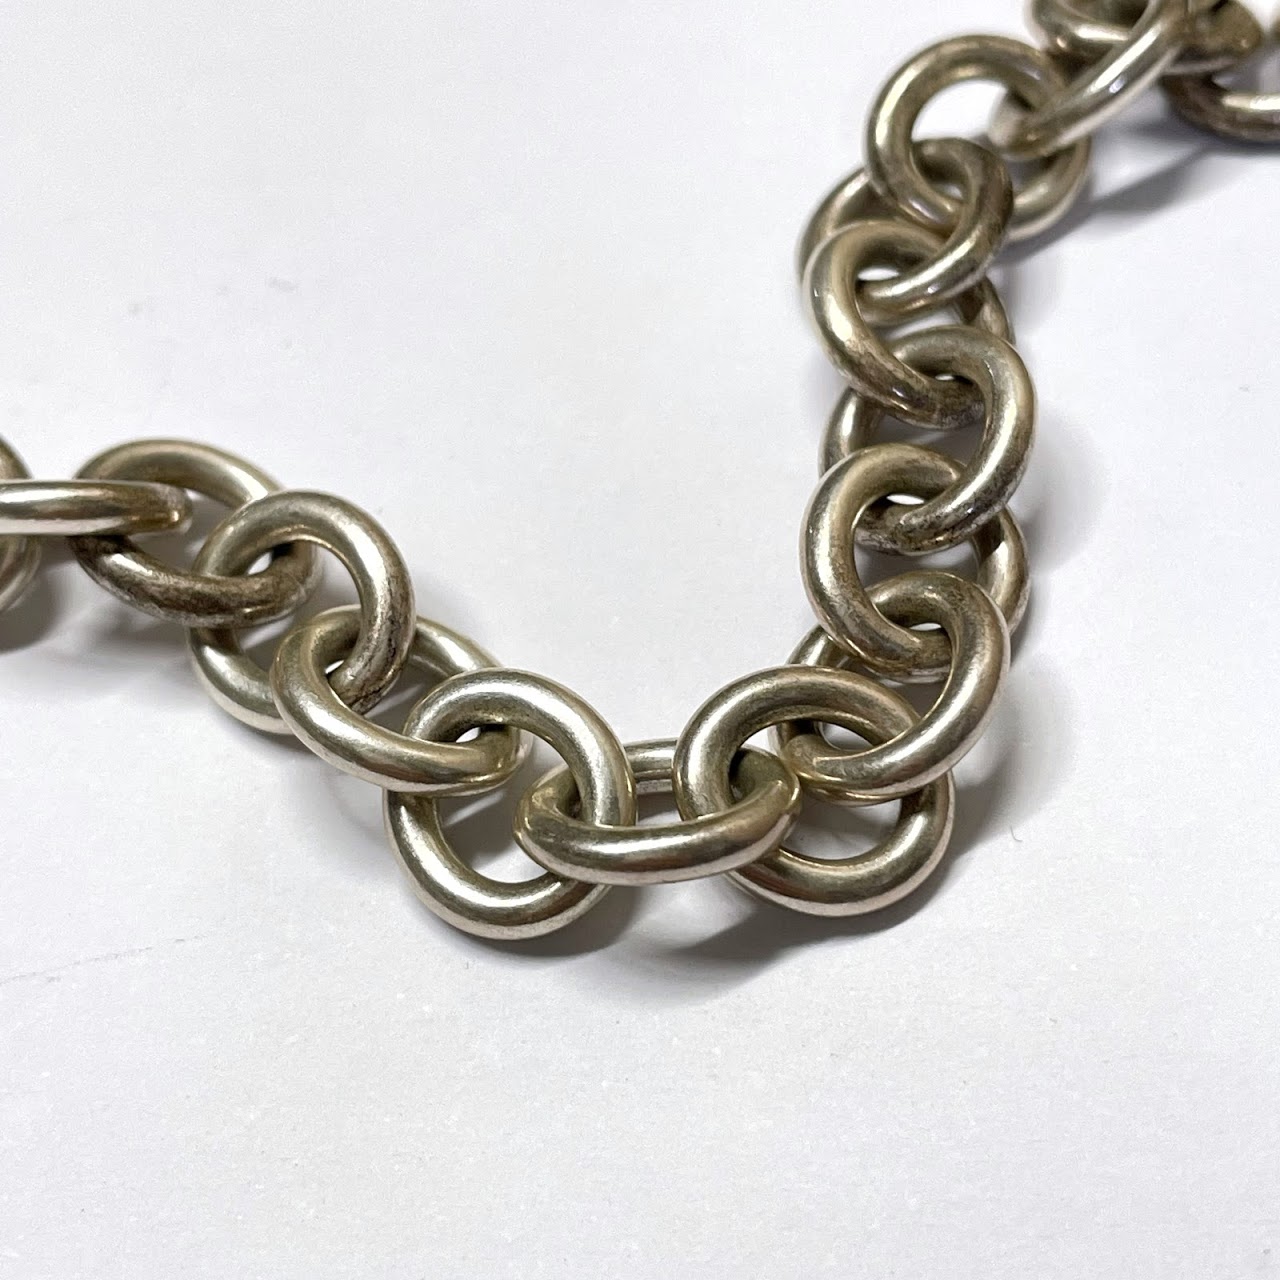 Tiffany & Co. Sterling Silver Heart Charm Bracelet